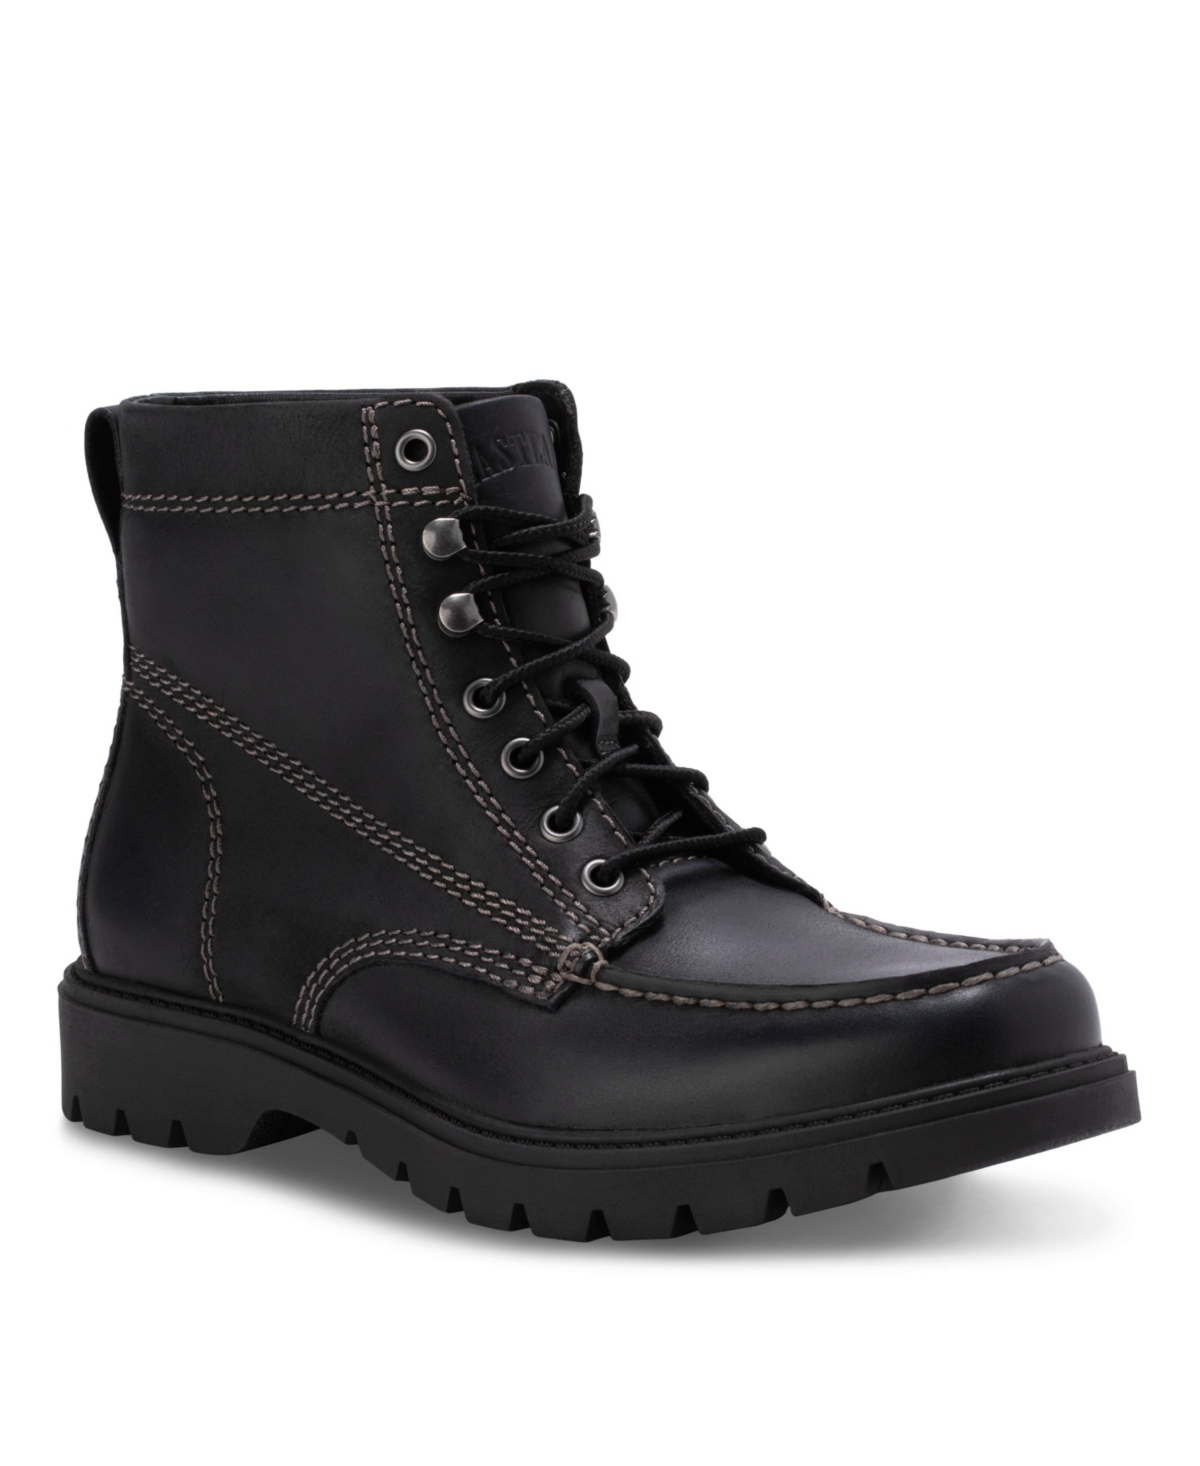 Men's Belgrade Moc Toe Boots - Black